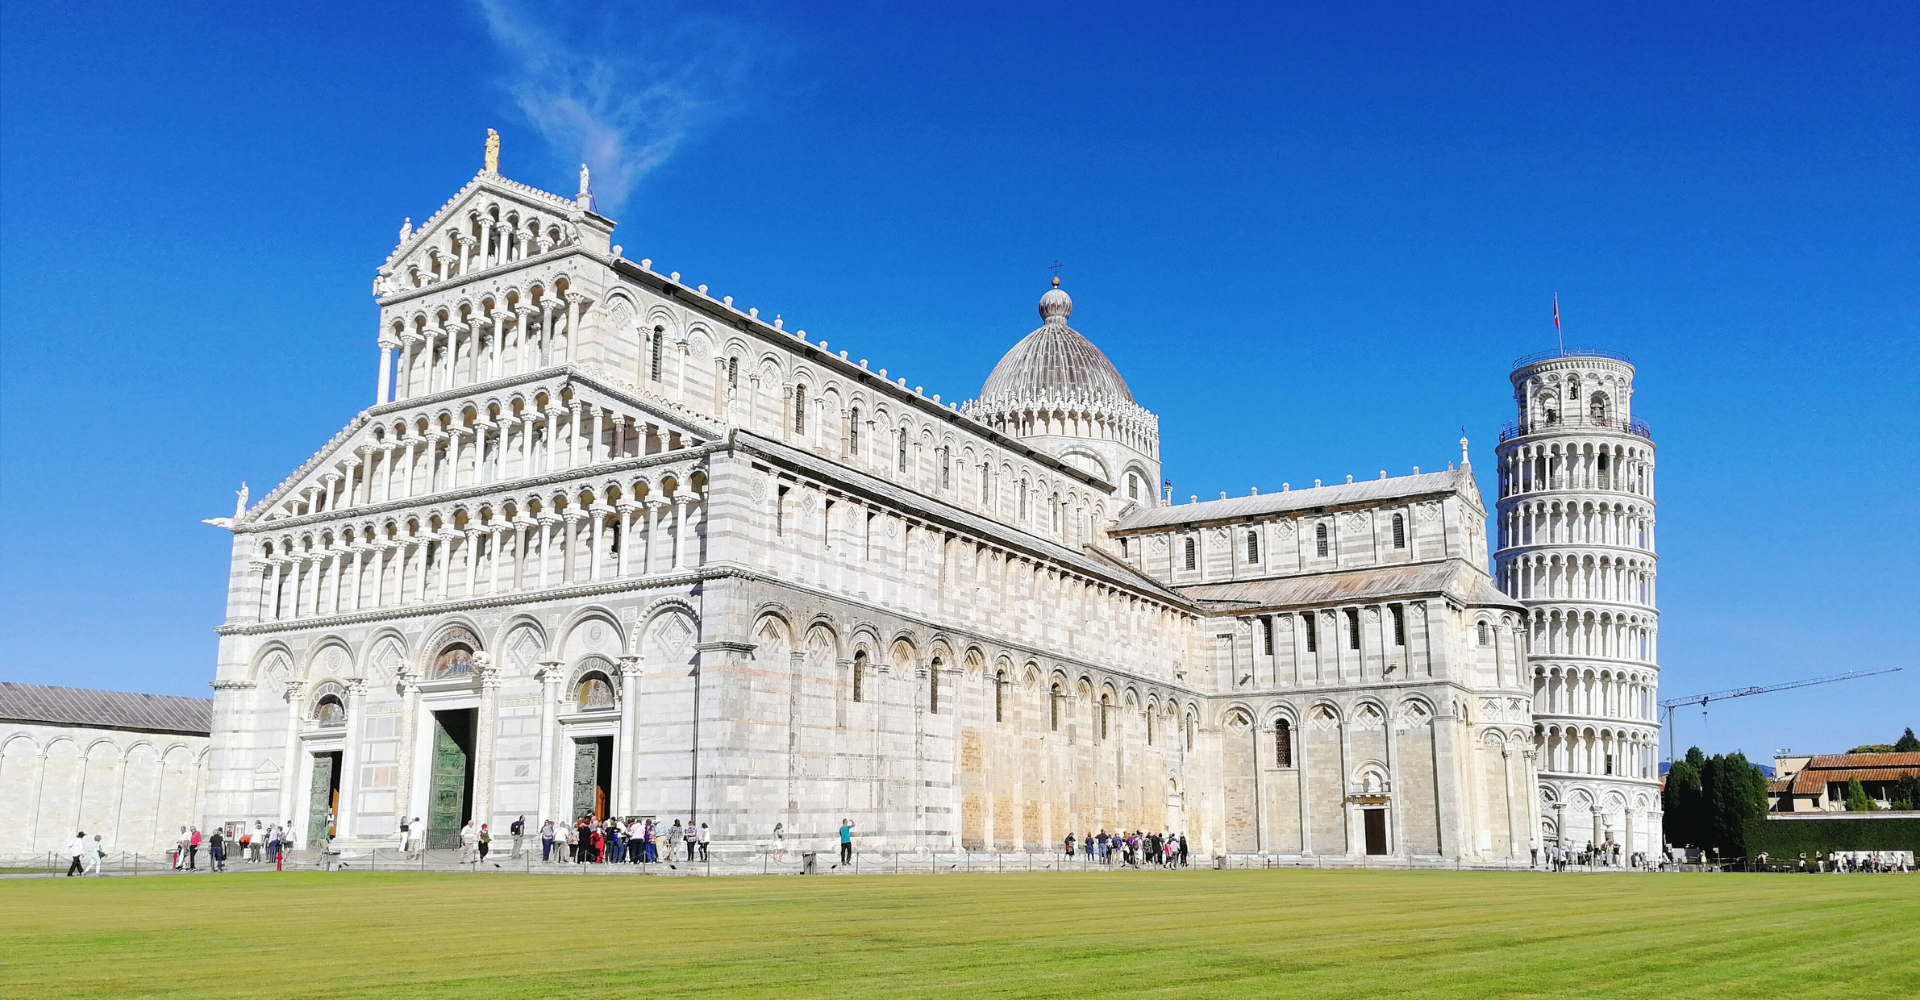 Cinque giorni in sella alla tua bici per scoprire Pisa, Lucca, Vinci e Firenze